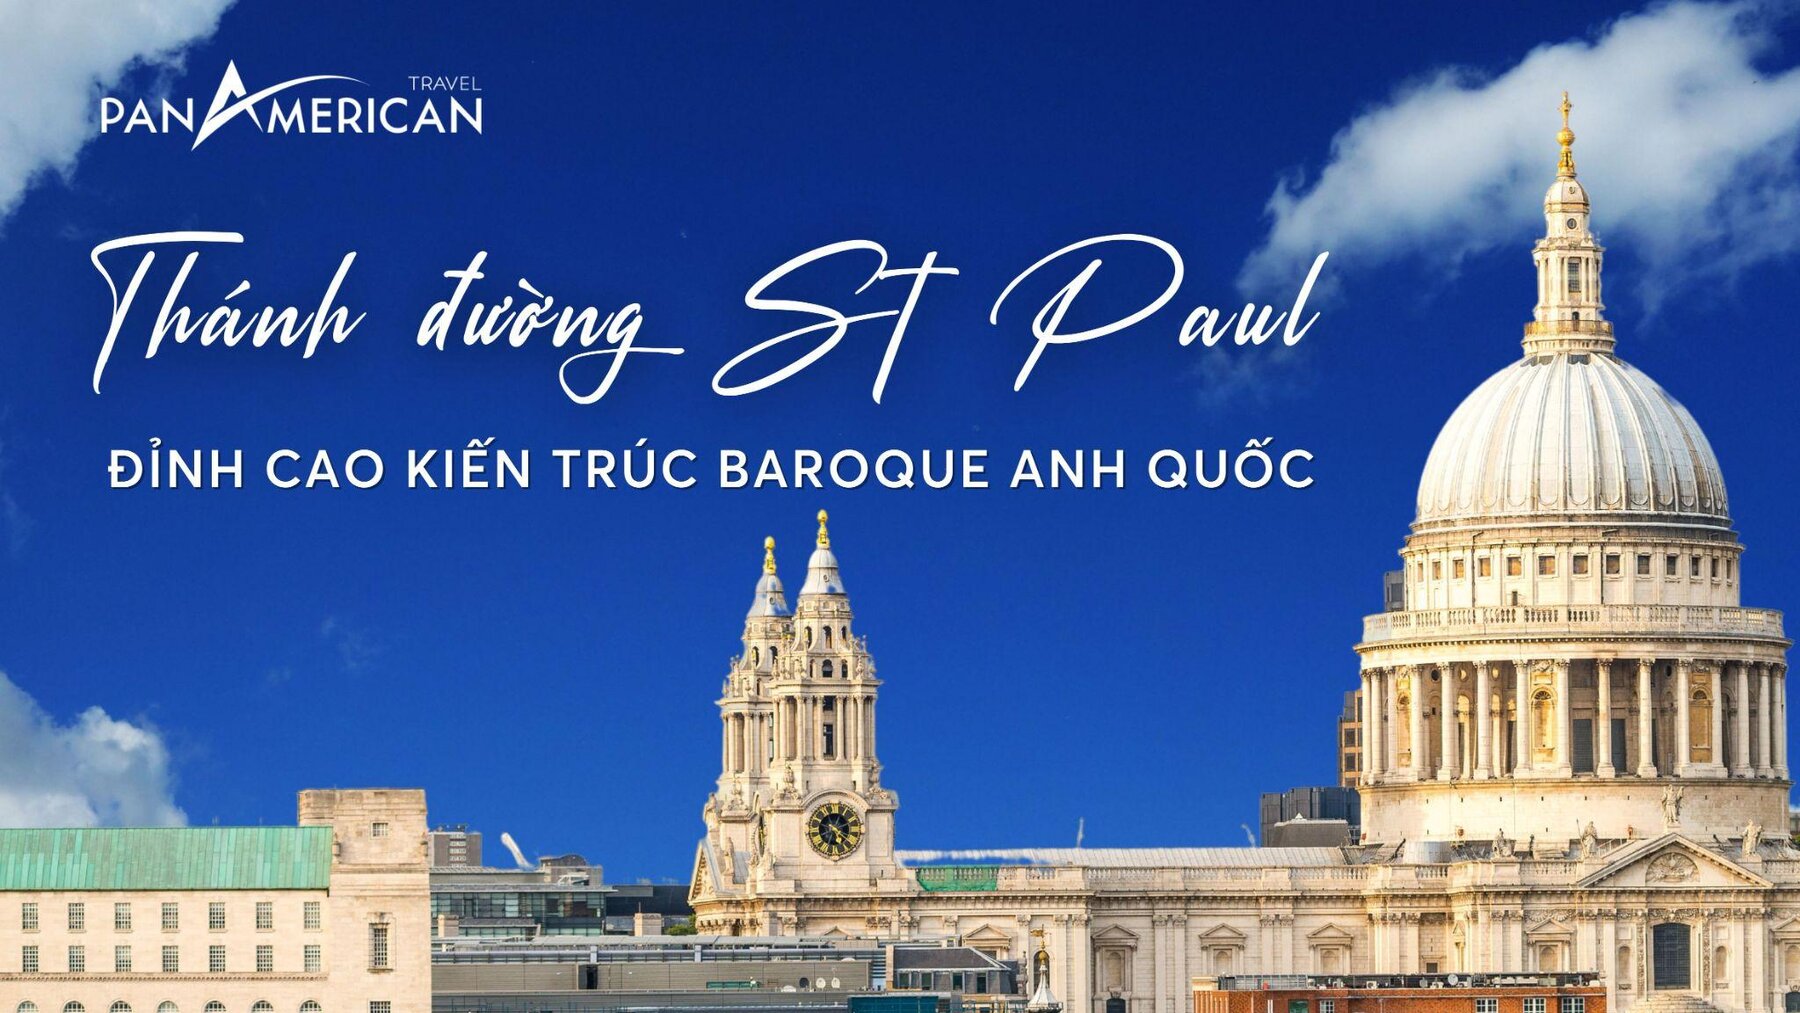 Thánh đường St Paul - Chiêm ngưỡng nghệ thuật kiến trúc Baroque tinh tế 